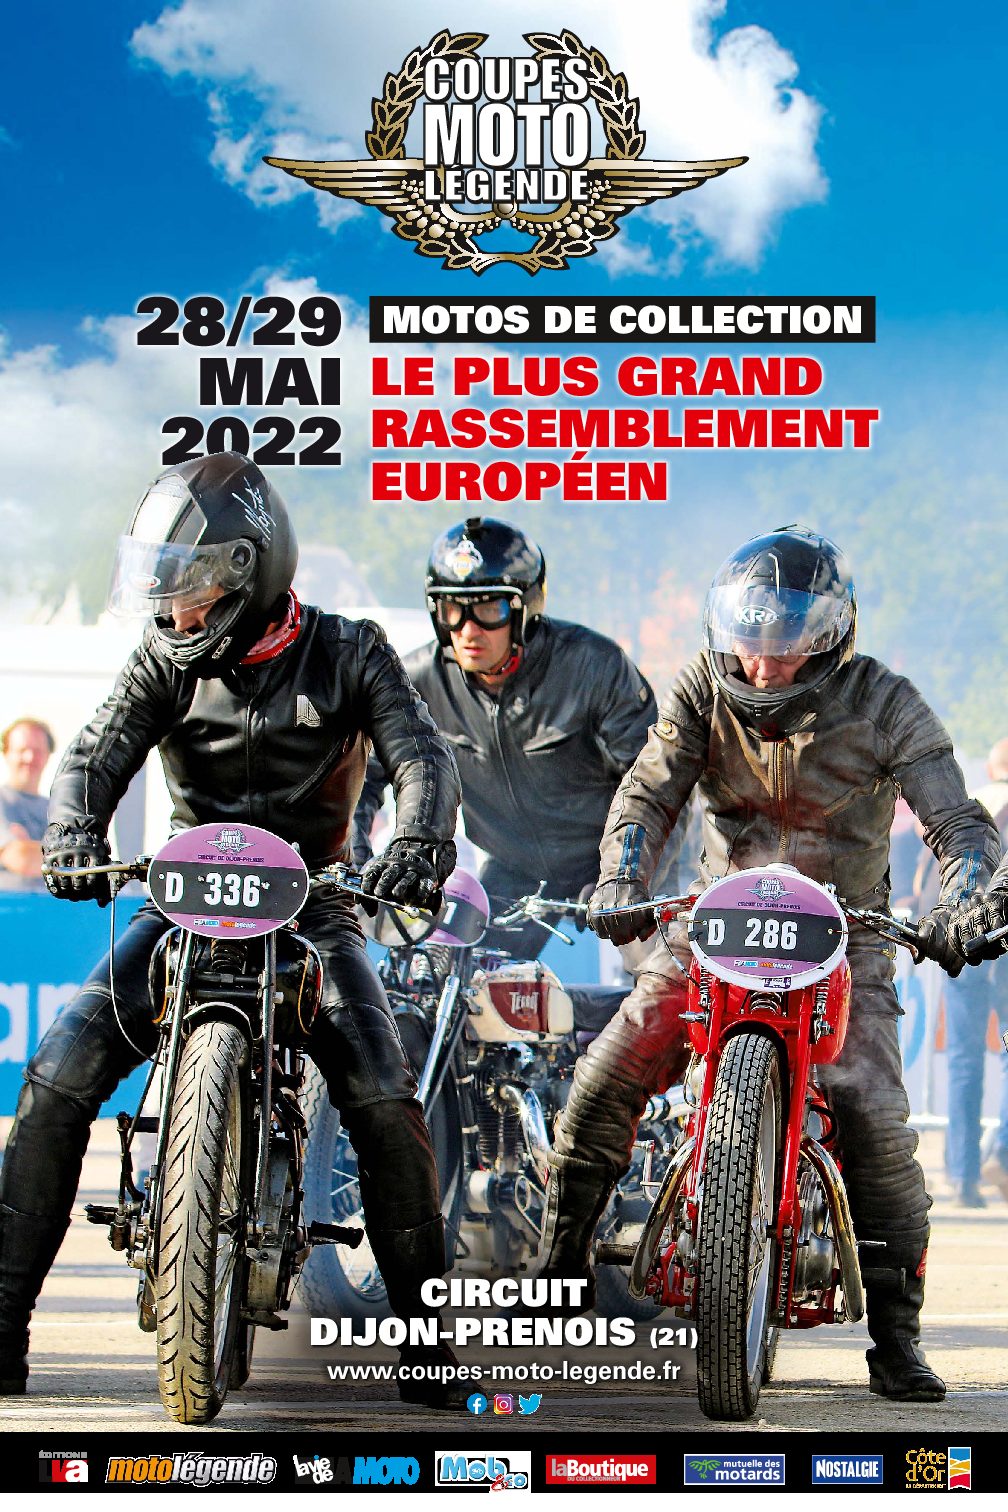 Coupes Moto Légende - Parc des expositions Villepinte